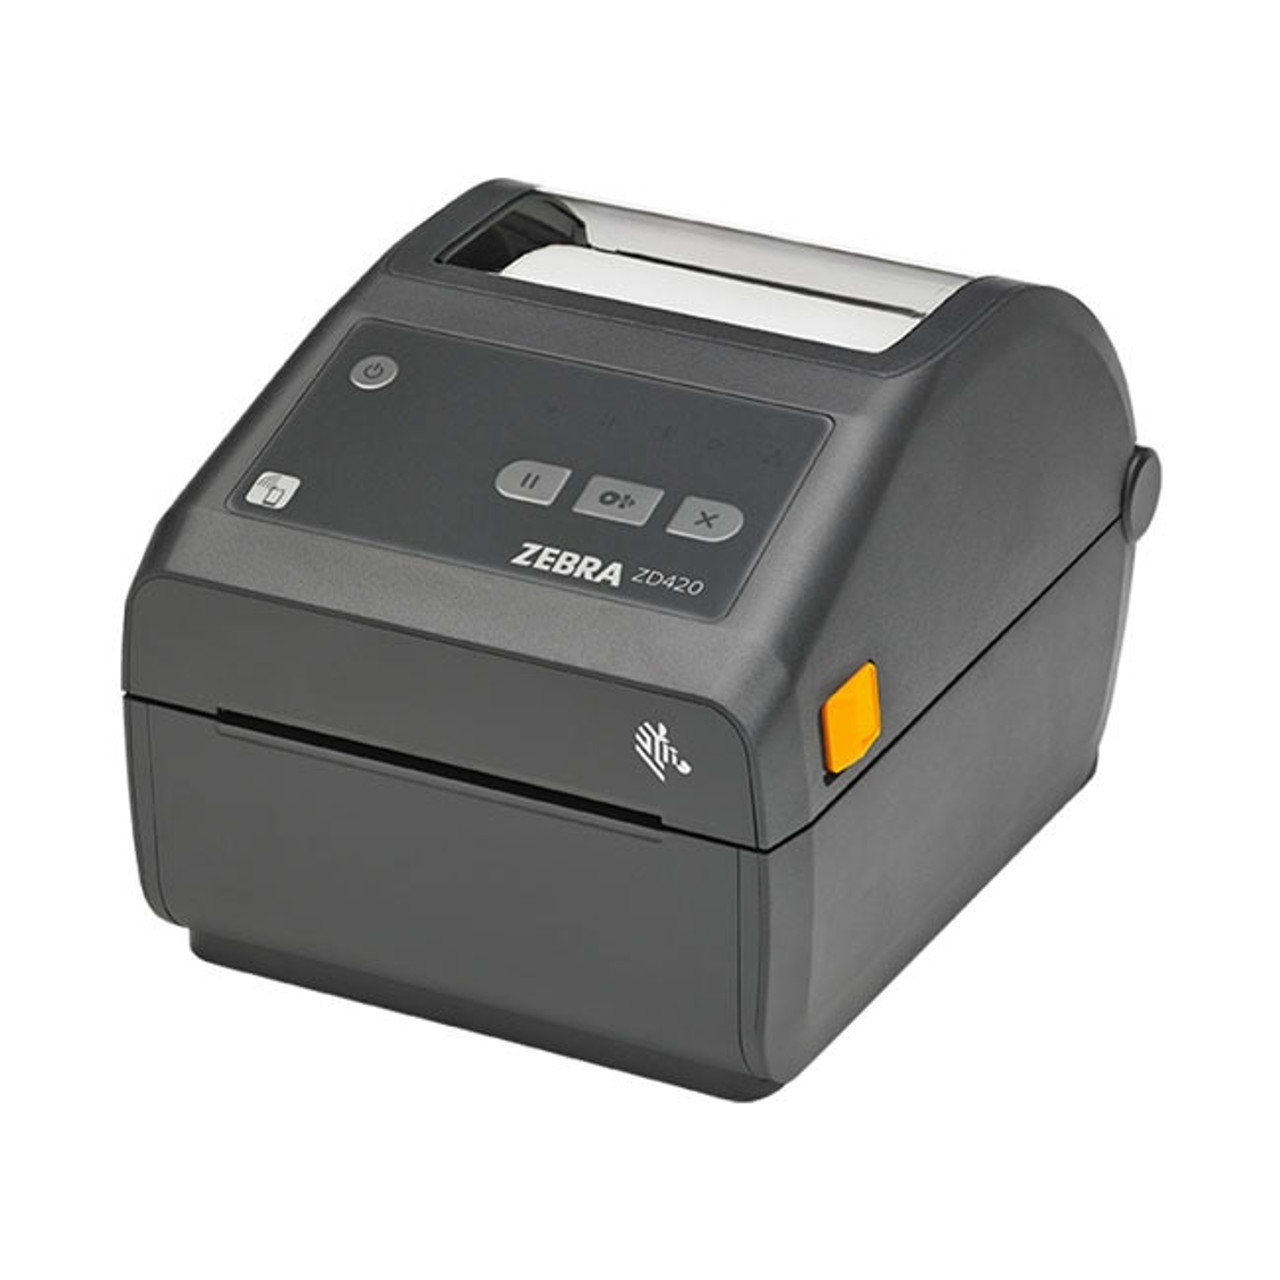 Zebra Zd420 Direct Thermal Desktop Printer Label Printers Australia 2687